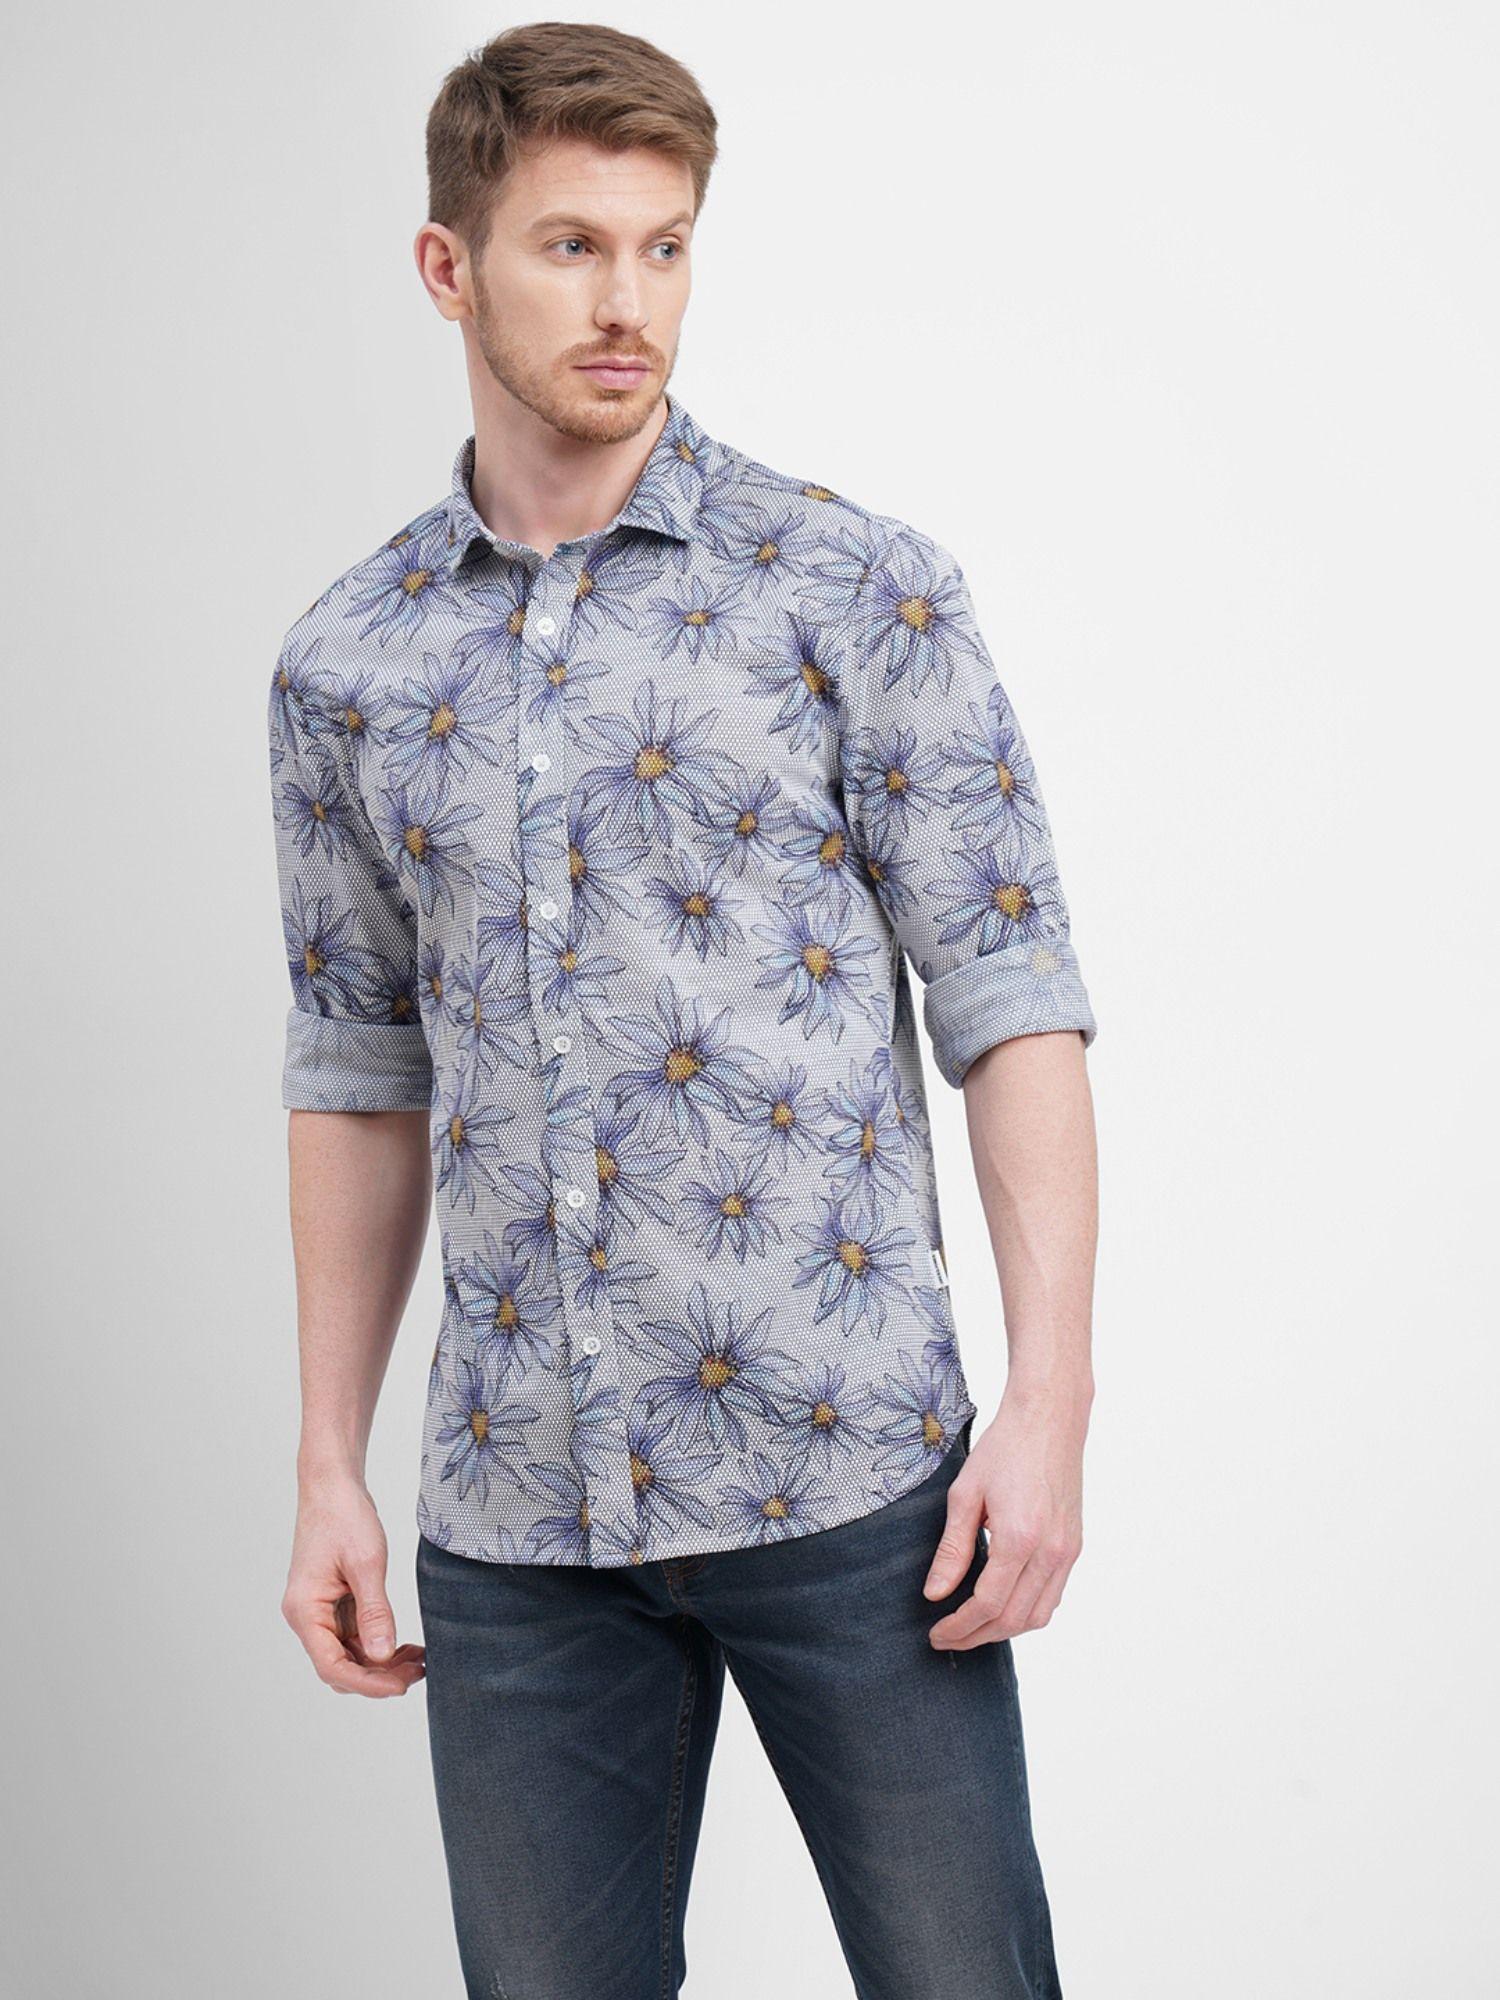 blue sunflower print full sleeves shirt